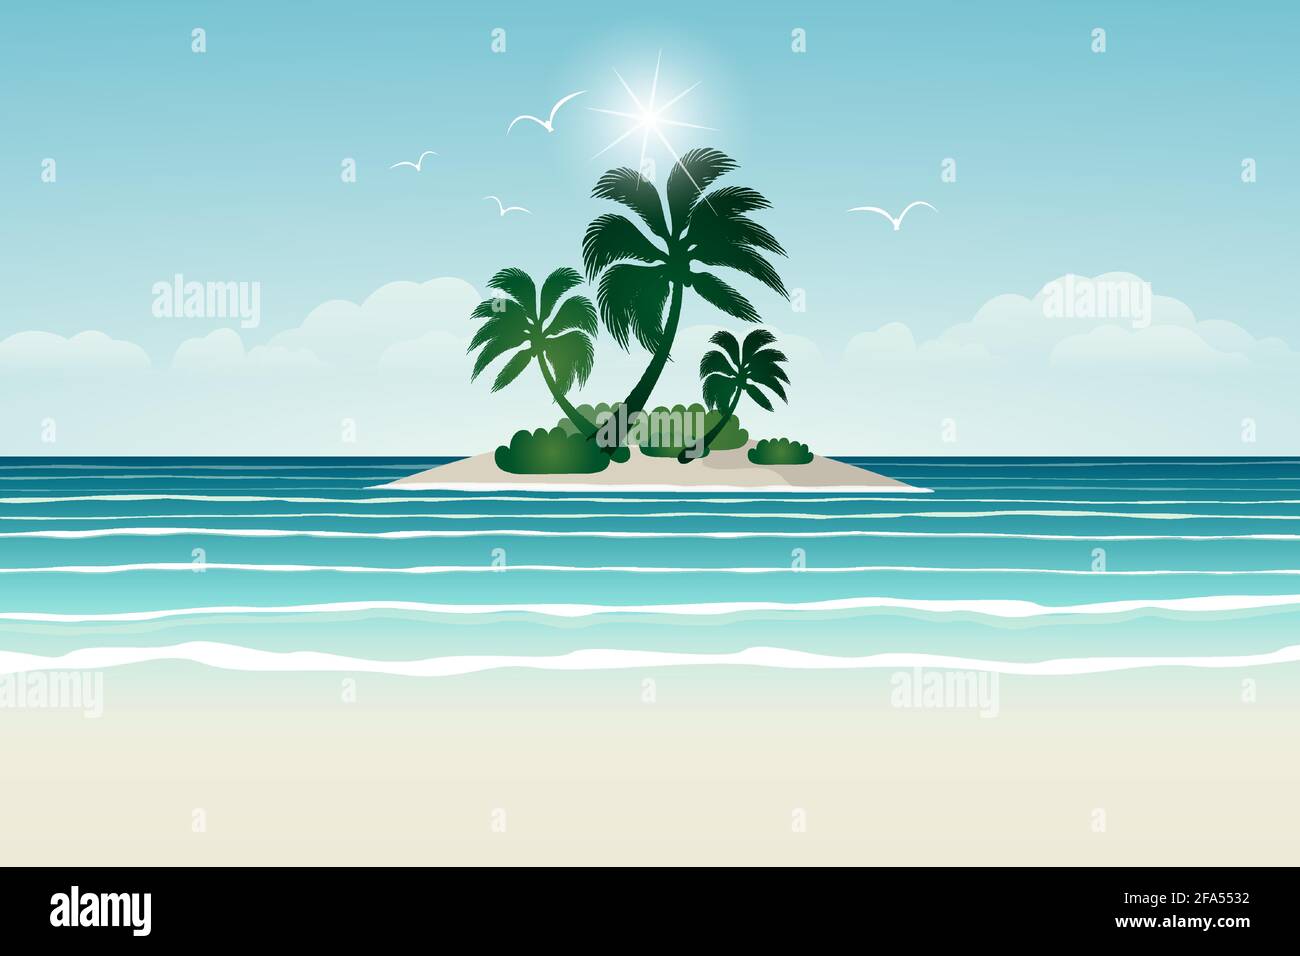 île tropicale, palmiers sur une île dans l'océan Illustration de Vecteur